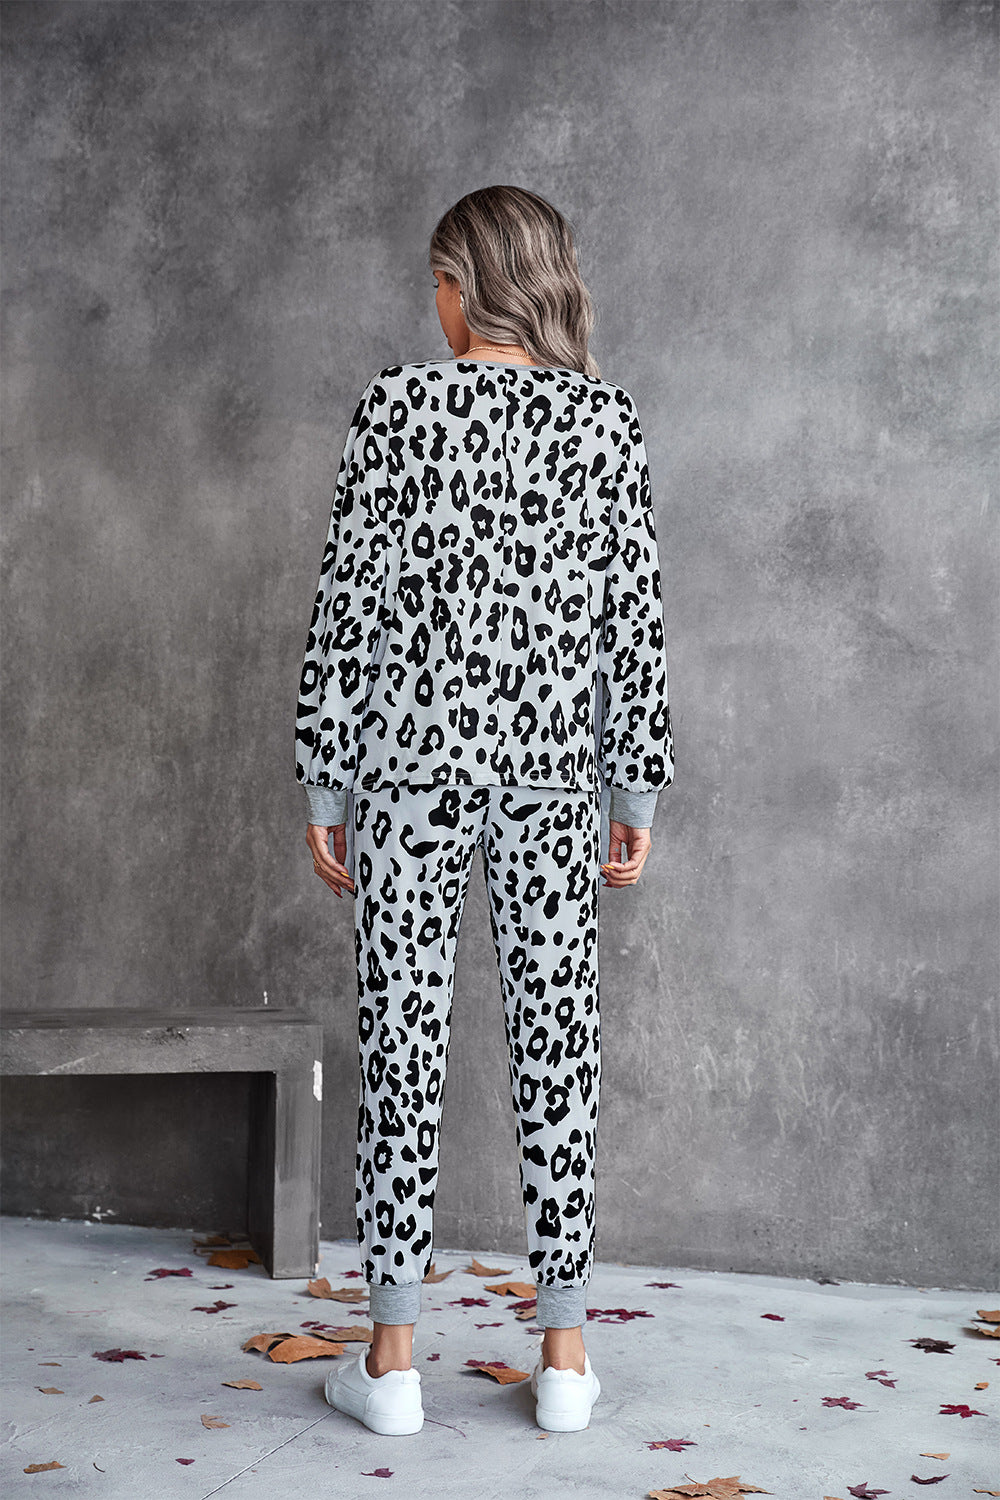 Leopard V-Neck Dropped Shoulder Loungewear Set - DromedarShop.com Online Boutique